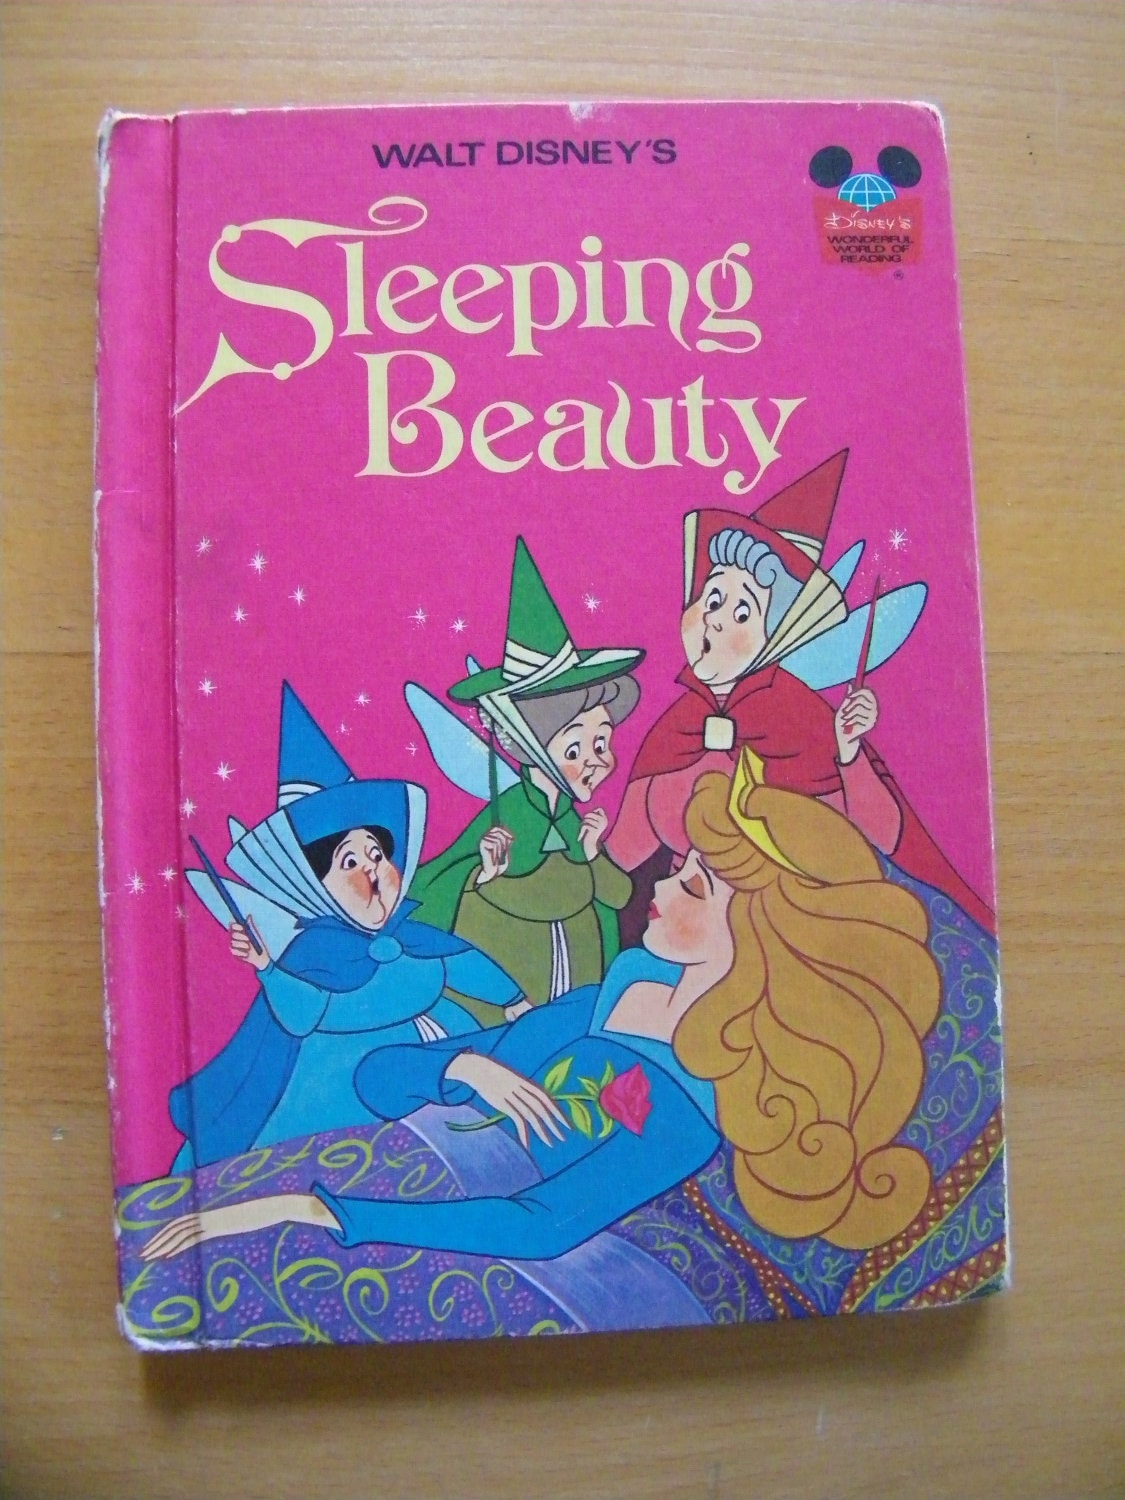 Sleeping Beauty 1974 by Walt Disney Book by THEITGIRLSHOP on Etsy1125 x 1500